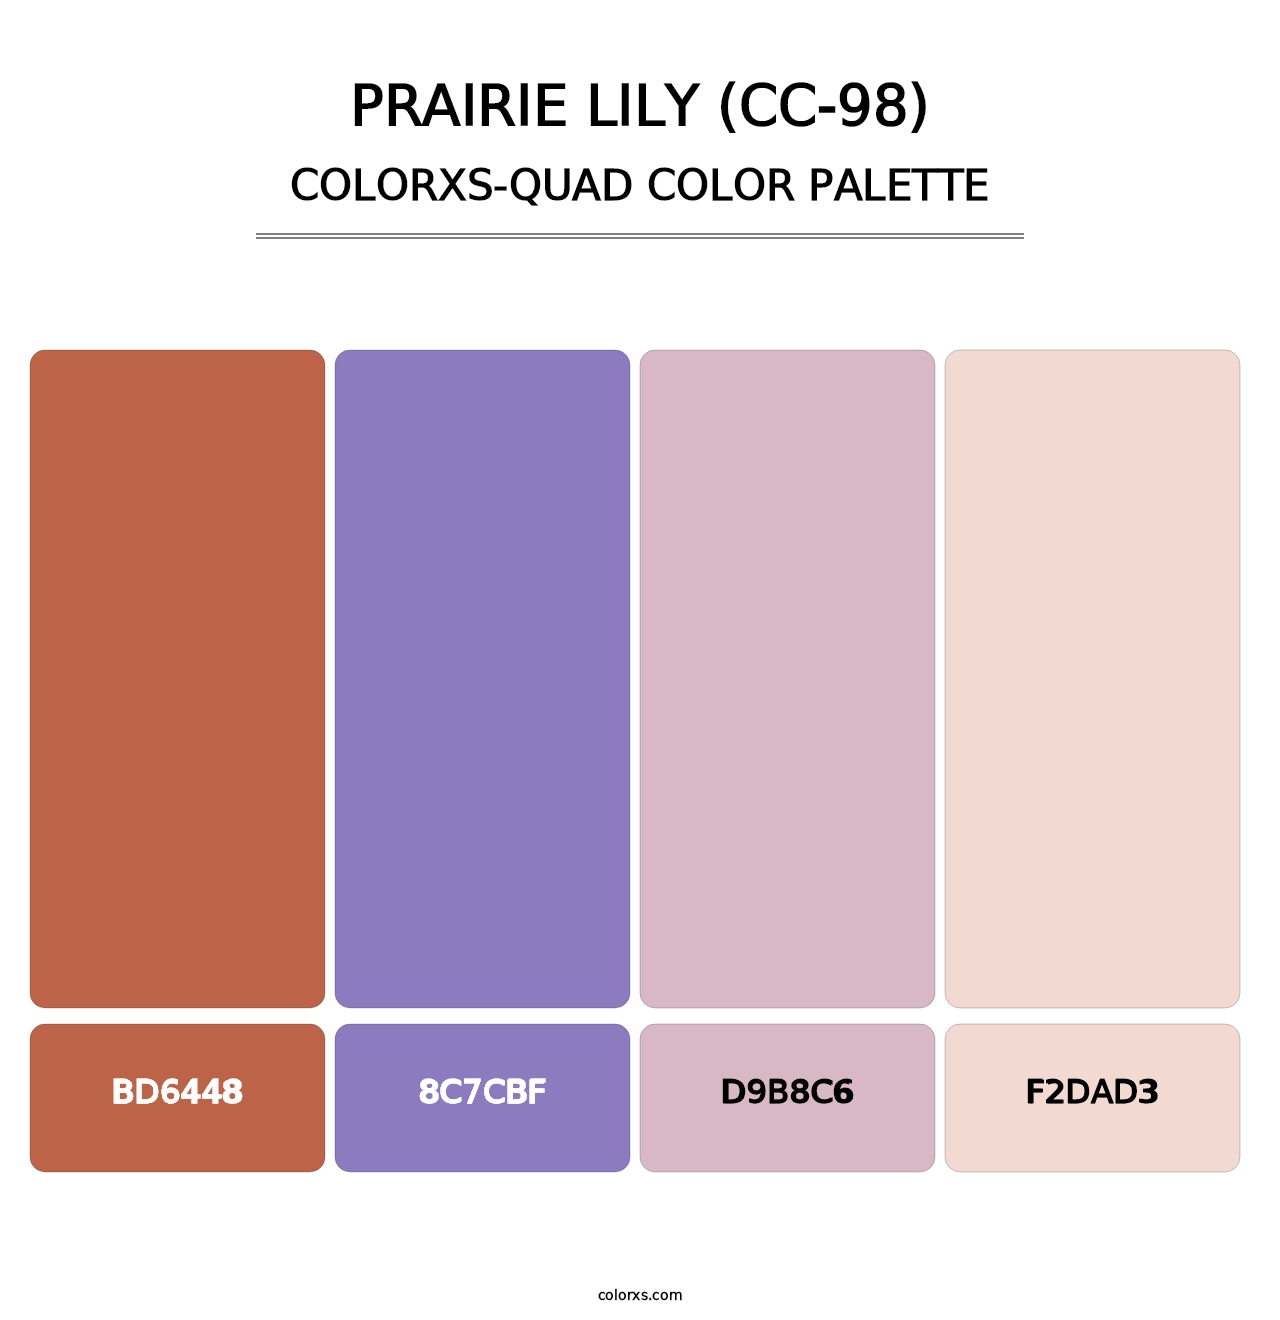 Prairie Lily (CC-98) - Colorxs Quad Palette